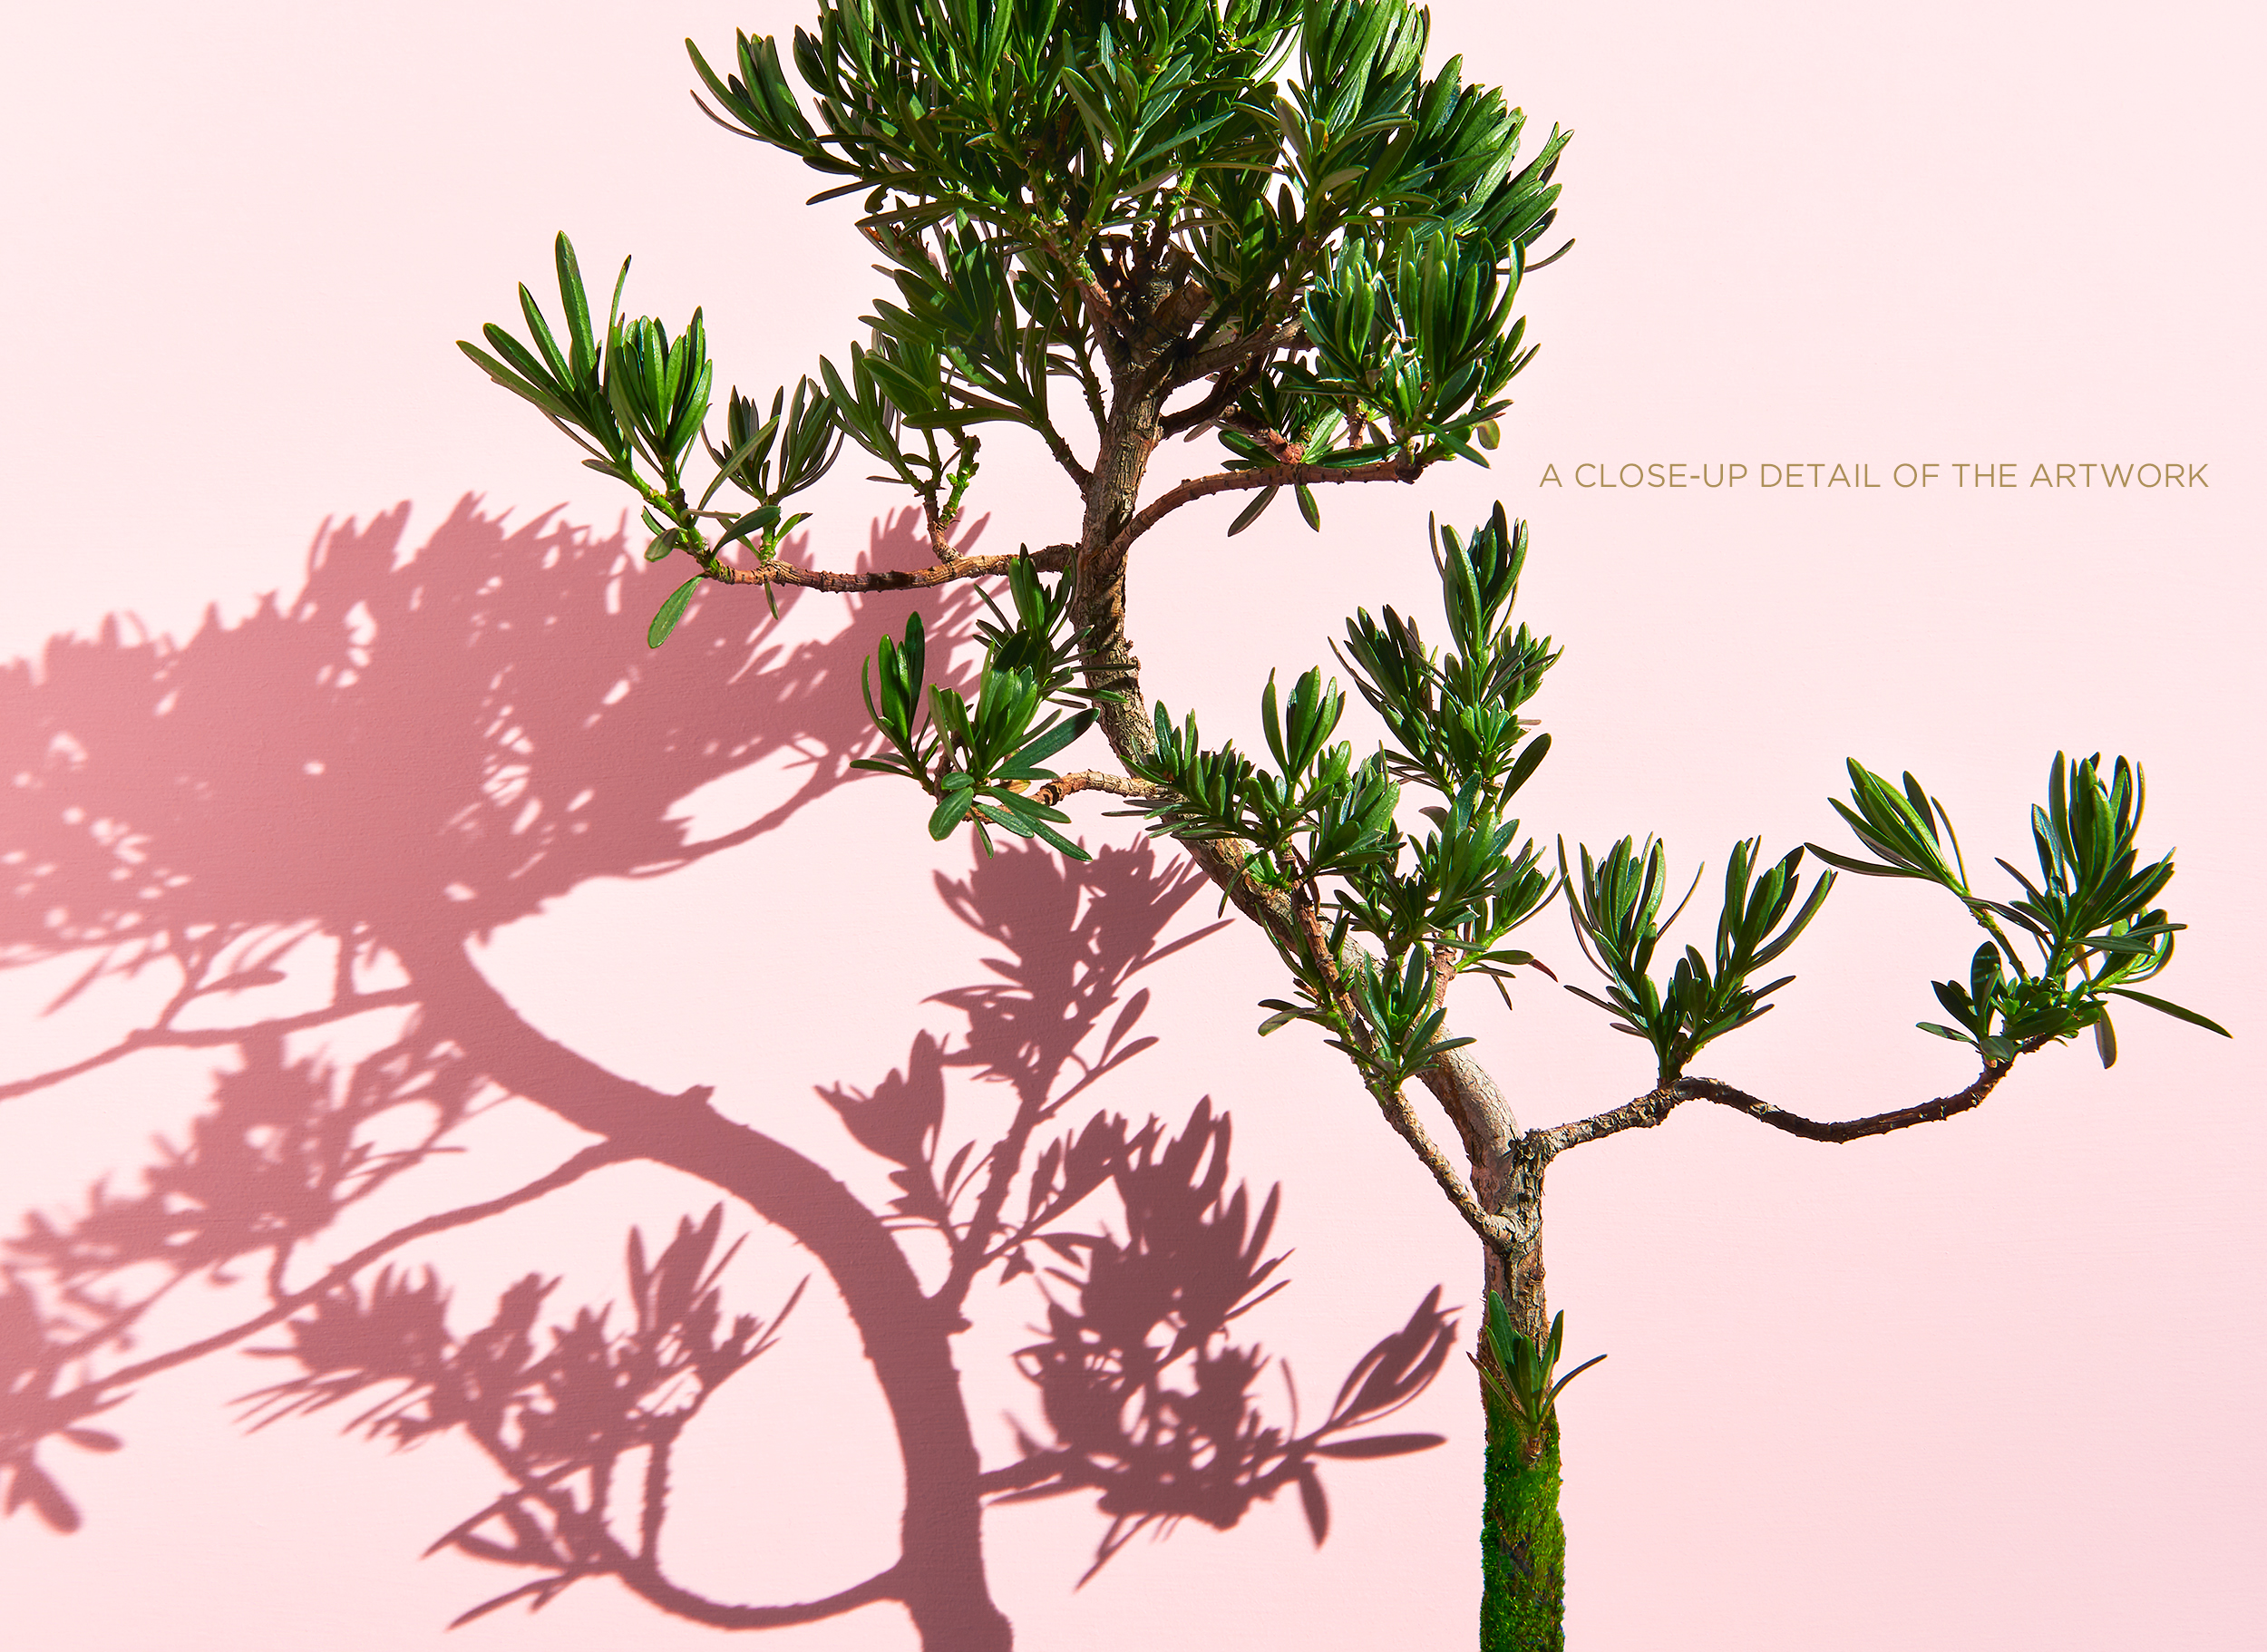 <a href="https://mrsteel.london/shop/bonsai-on-pink-iii/">REVEAL DETAILS / BUY</a> 